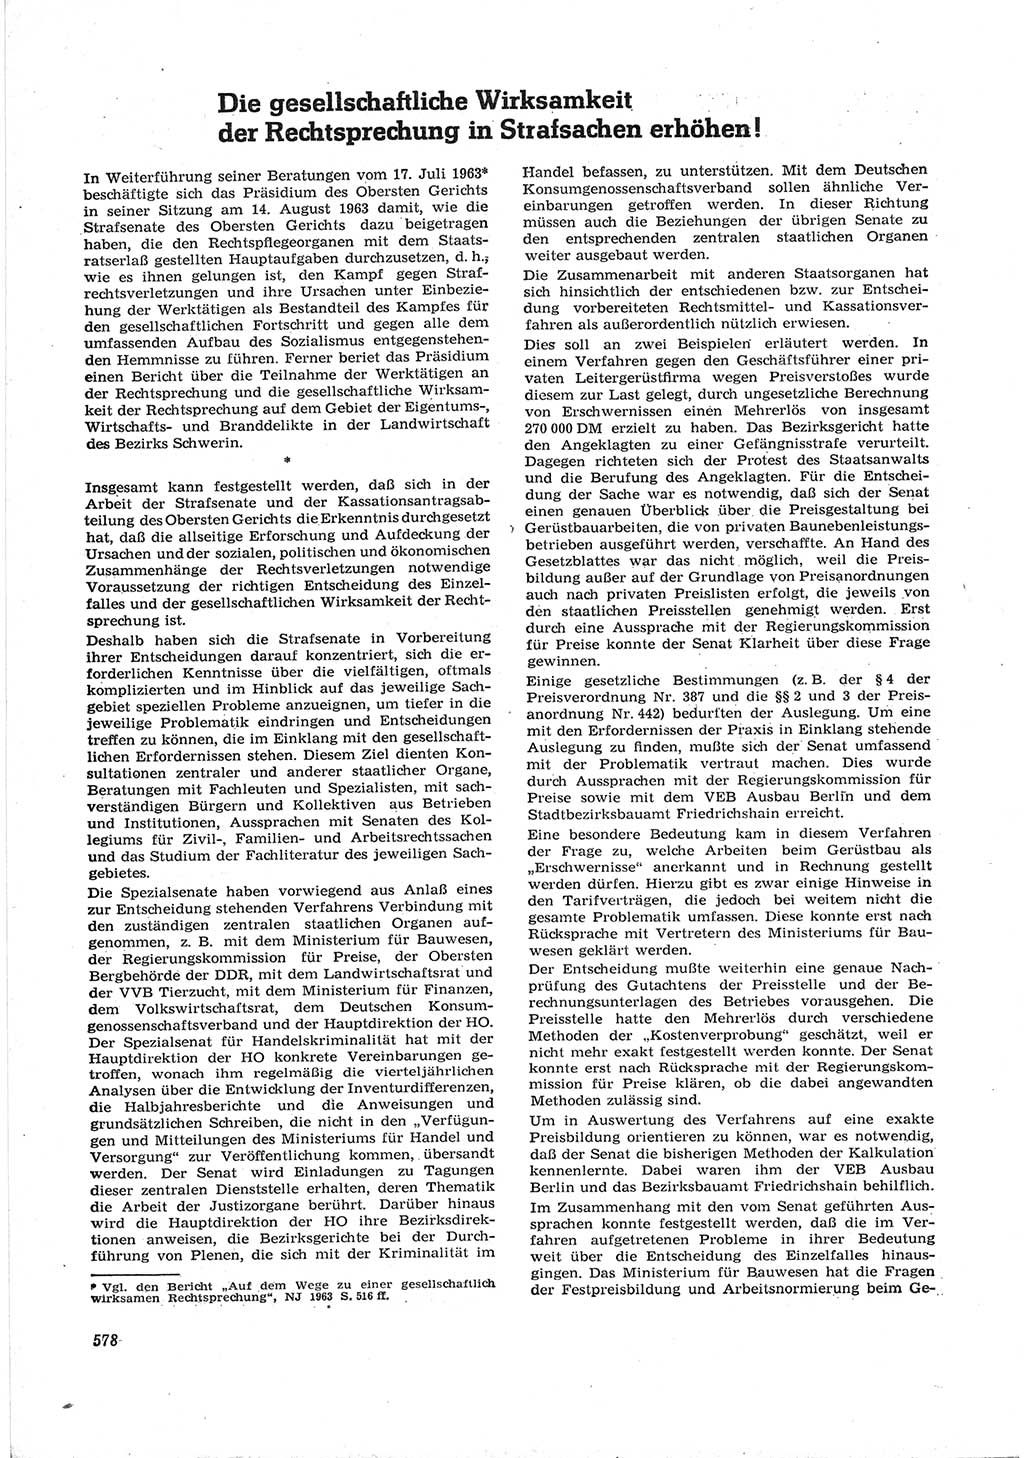 Neue Justiz (NJ), Zeitschrift für Recht und Rechtswissenschaft [Deutsche Demokratische Republik (DDR)], 17. Jahrgang 1963, Seite 578 (NJ DDR 1963, S. 578)